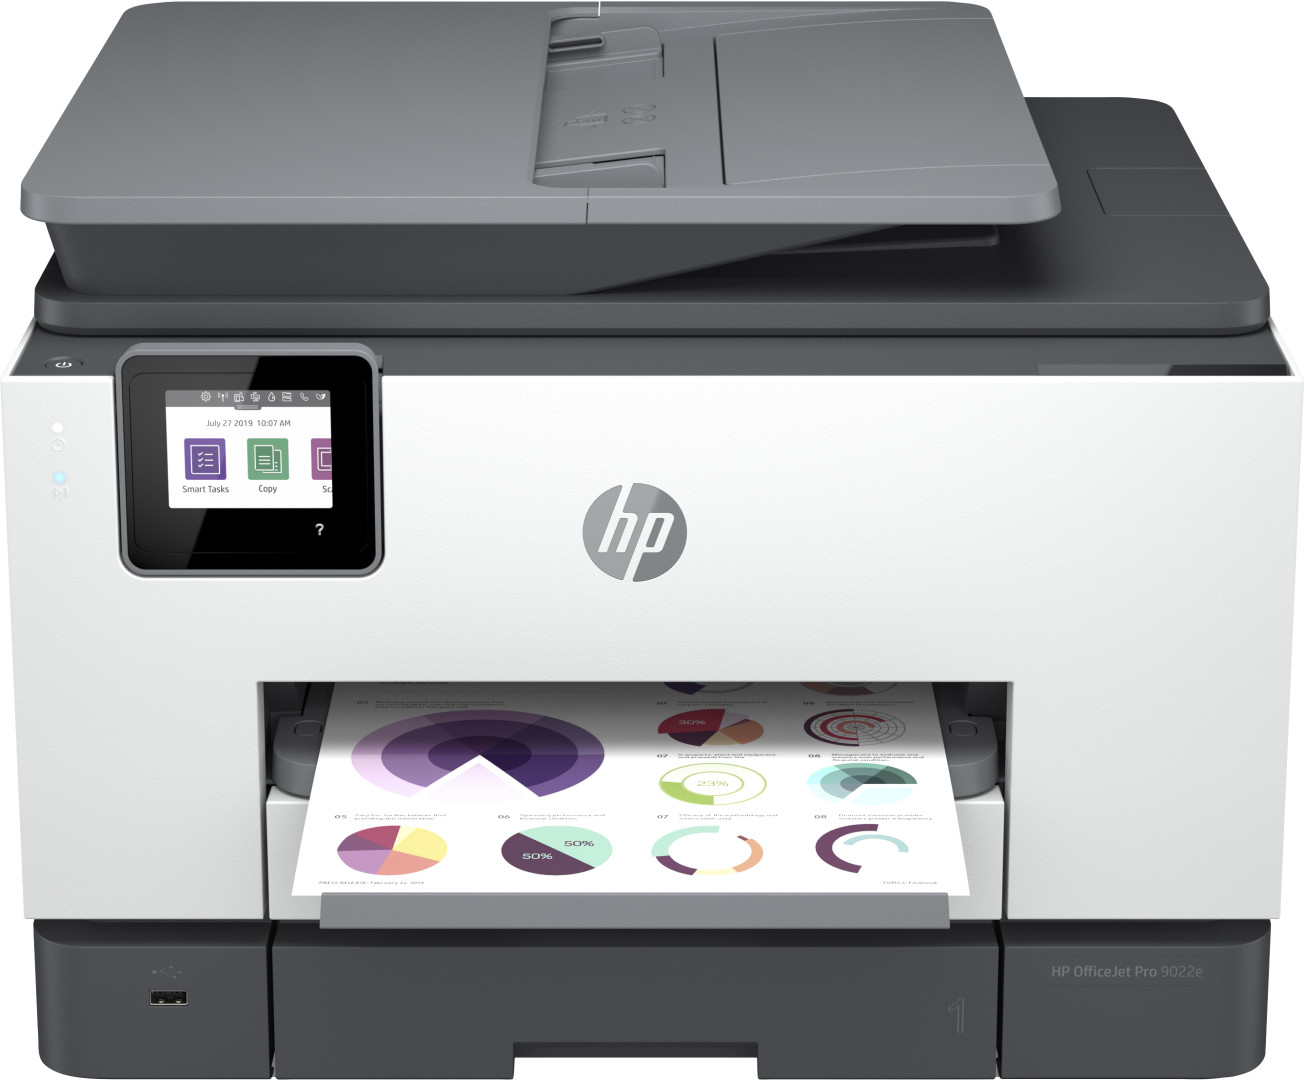 HP OfficeJet Pro Stampante multifunzione HP 9022e, Colore, Stampante per Piccoli uffici, Stampa, copia, scansione, fax, HP+, Idoneo per HP Instant Ink, alimentatore automatico di documenti, Stampa fronte/retro